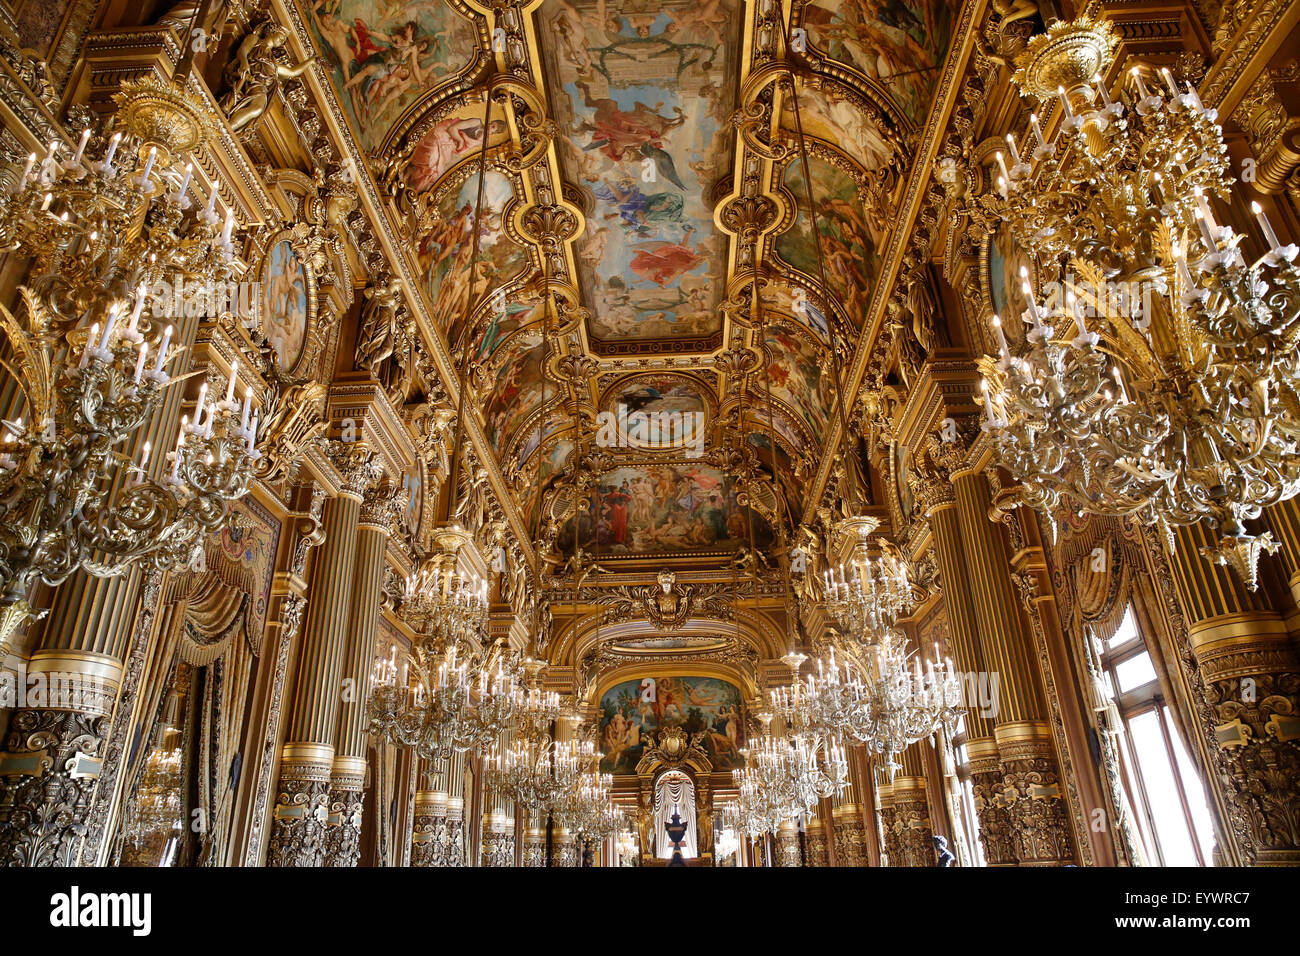 Plafond du Grand Foyer, Opéra de Paris, Palais Garnier, Paris, France, Europe Banque D'Images